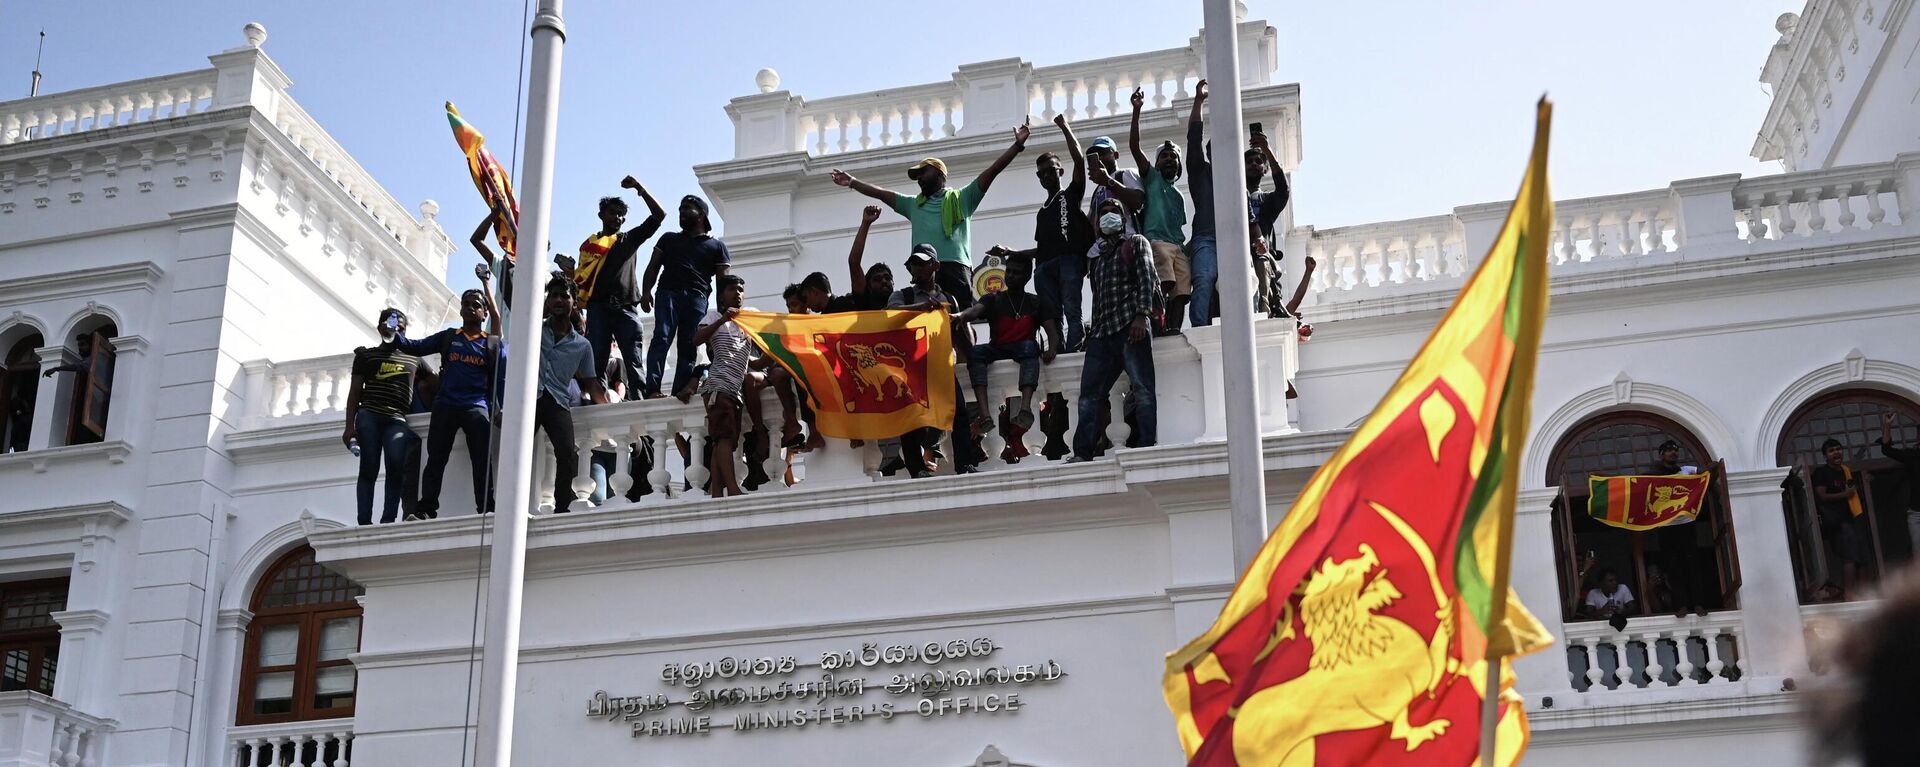 Manifestantes asaltan el palacio del primer ministro de Sri Lanka - Sputnik Mundo, 1920, 14.07.2022